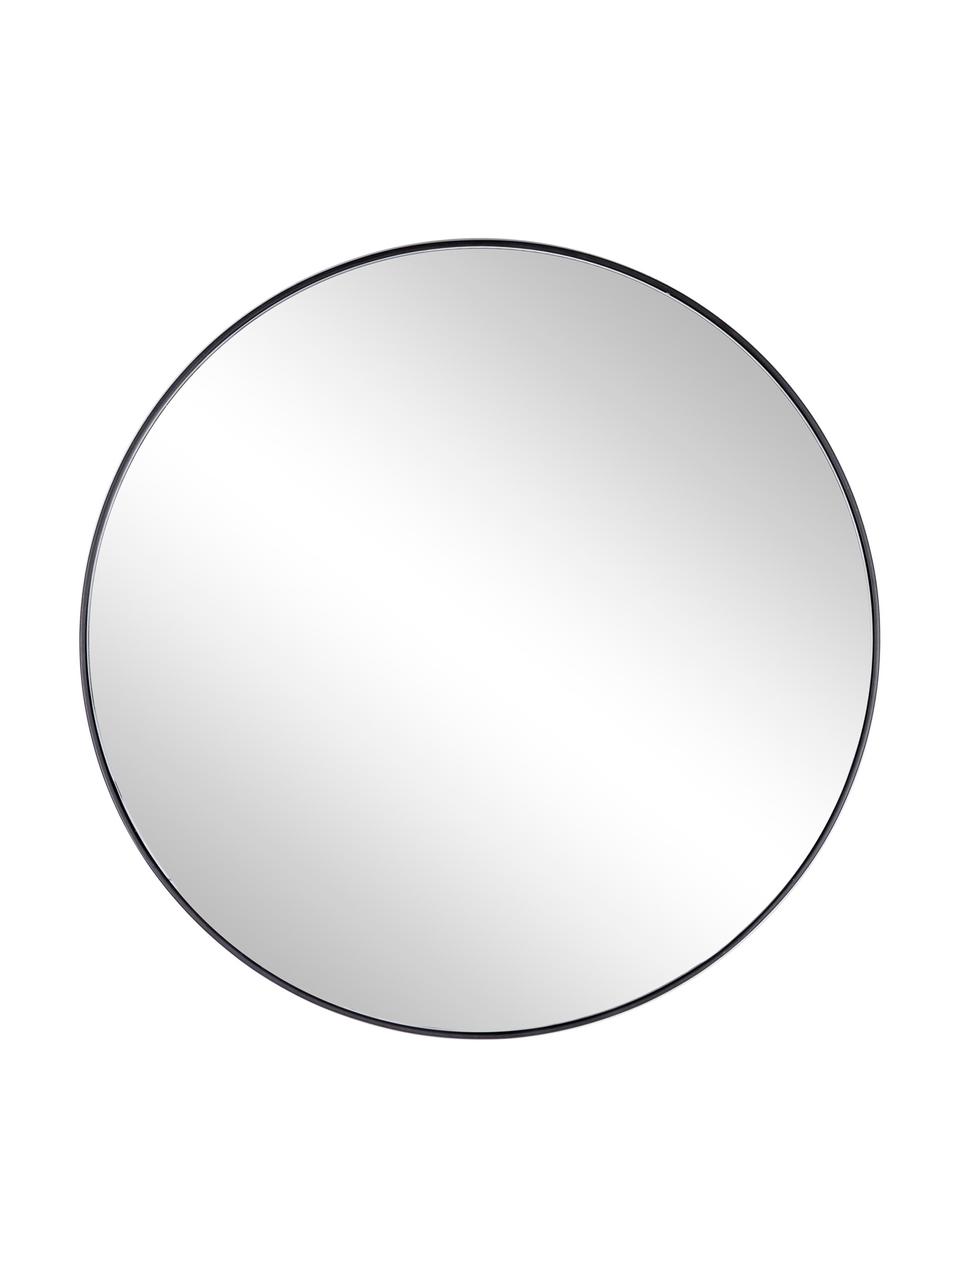 Specchio rotondo da parete con cornice in metallo nero Nucleos, Cornice: metallo rivestito, Superficie dello specchio: lastra di vetro, Nero, Ø 70 cm x Prof. 2 cm